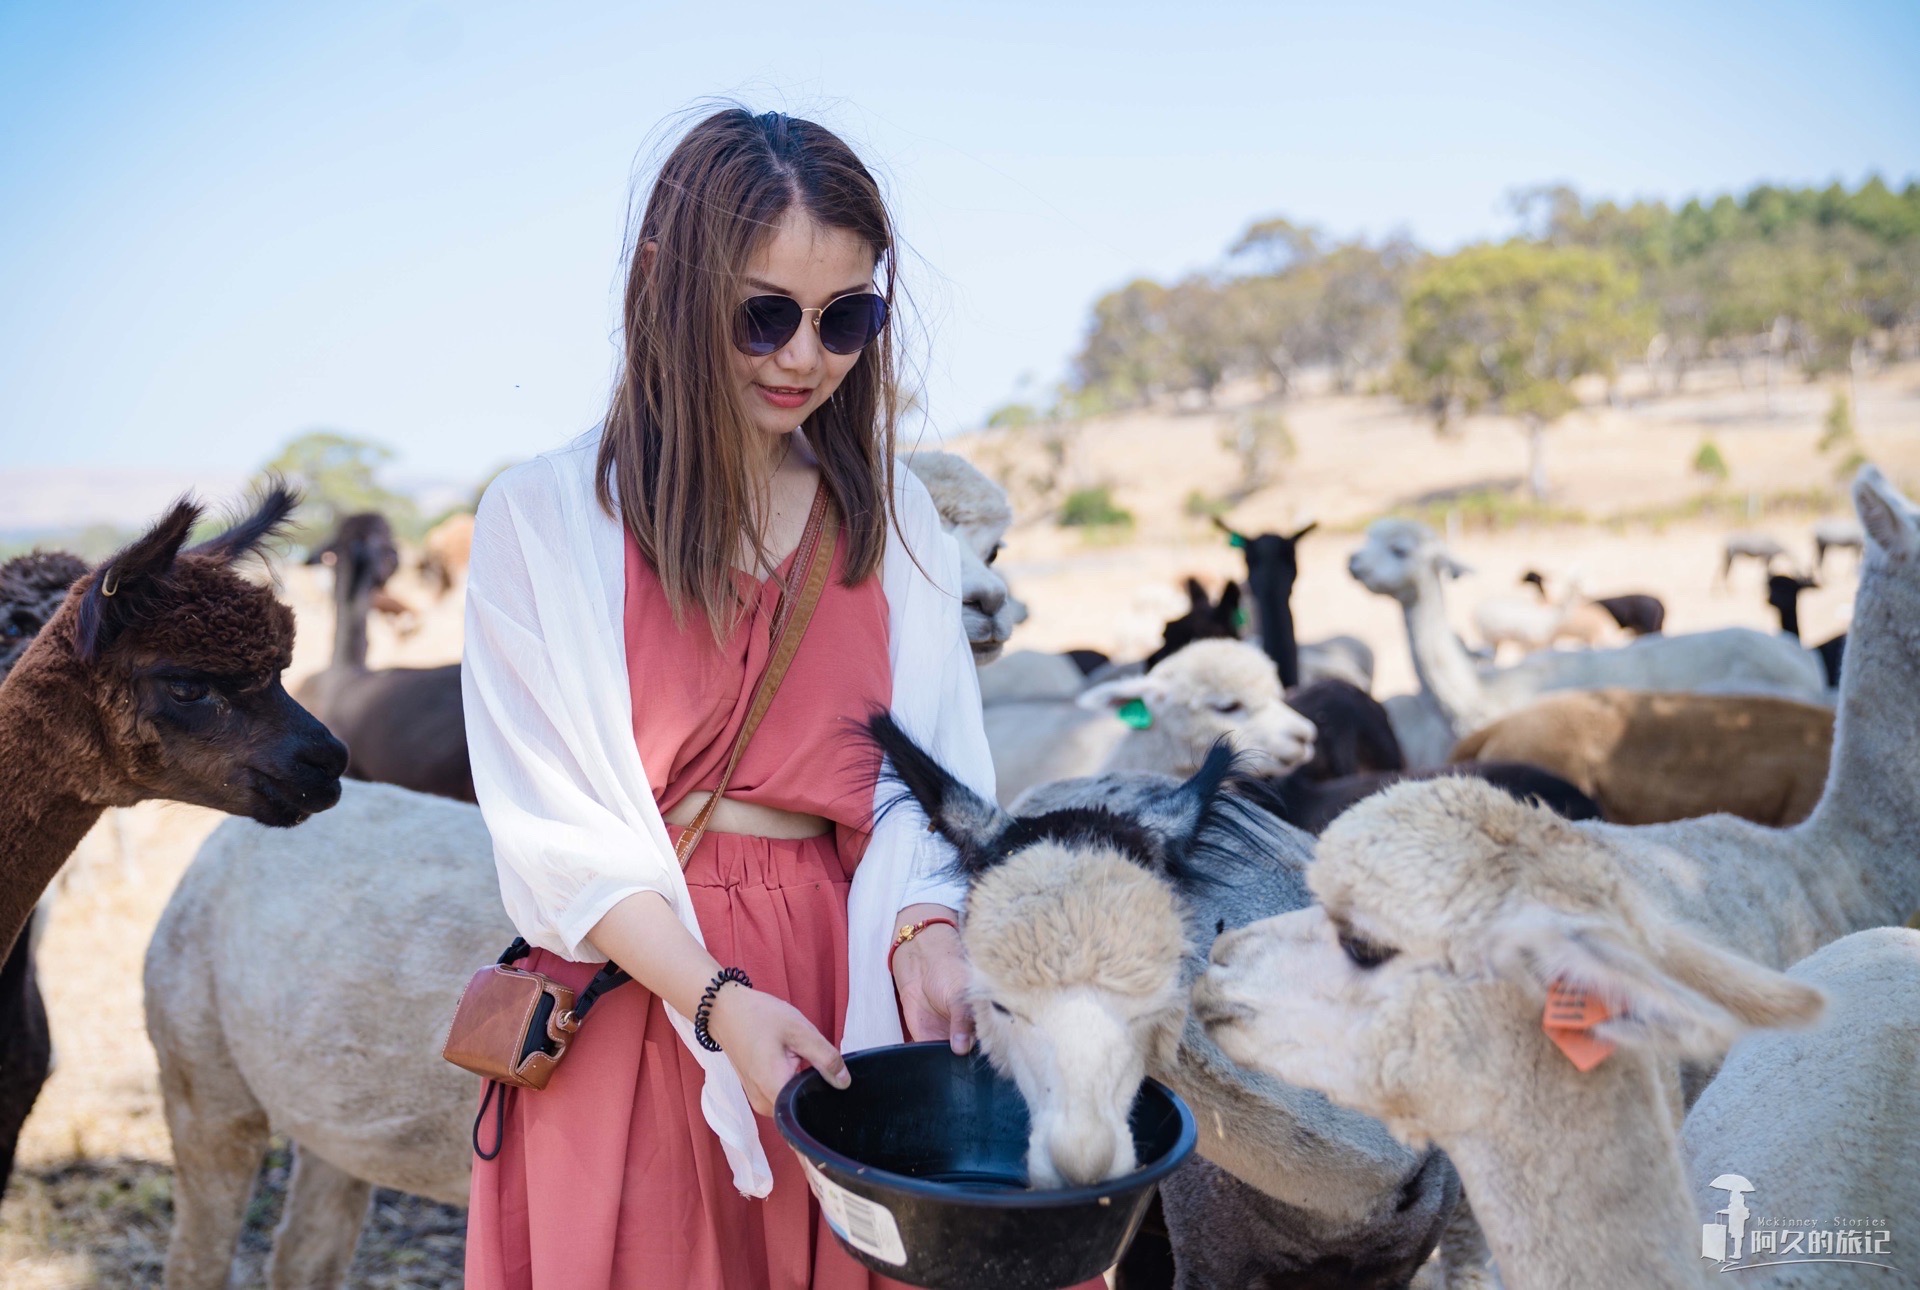 在索夫特羊驼农场，与萌宠们亲密接触
在去南澳大利亚之前，就有朋友跟我推荐说一定要去菲尔半岛的索夫特羊